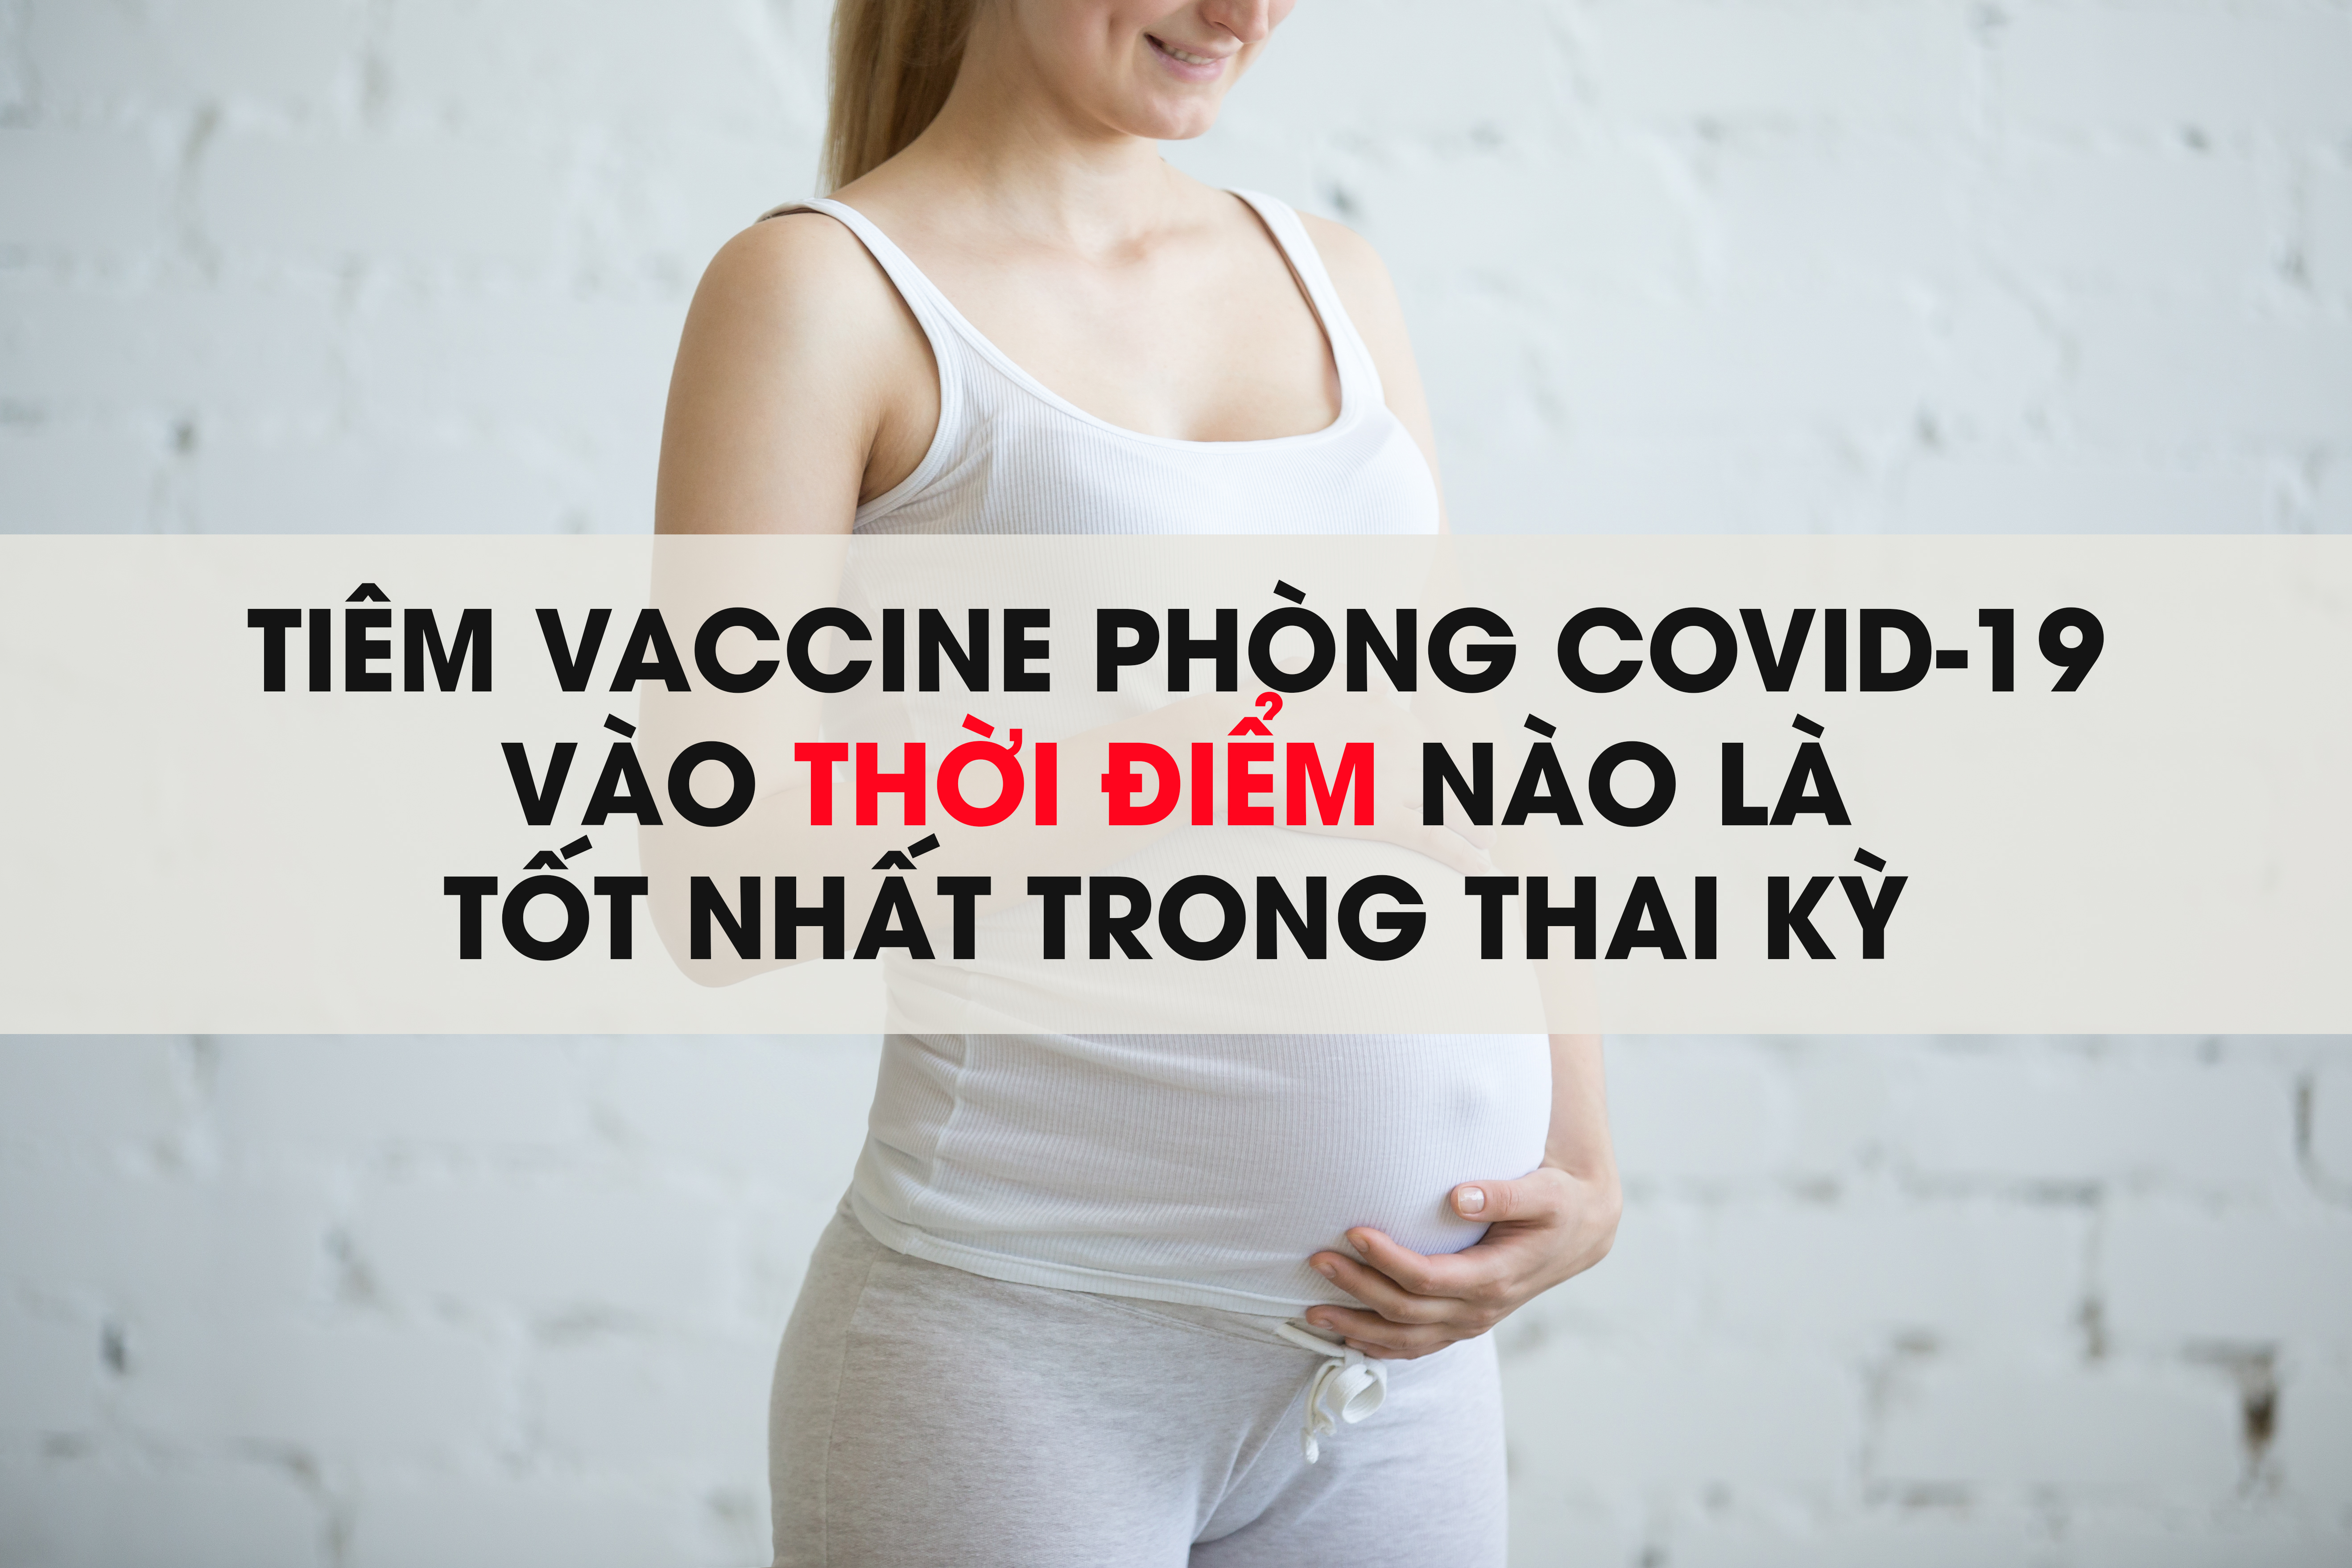 Tiêm vaccine phòng Covid-19 vào thời điểm nào là tốt nhất trong thai kỳ